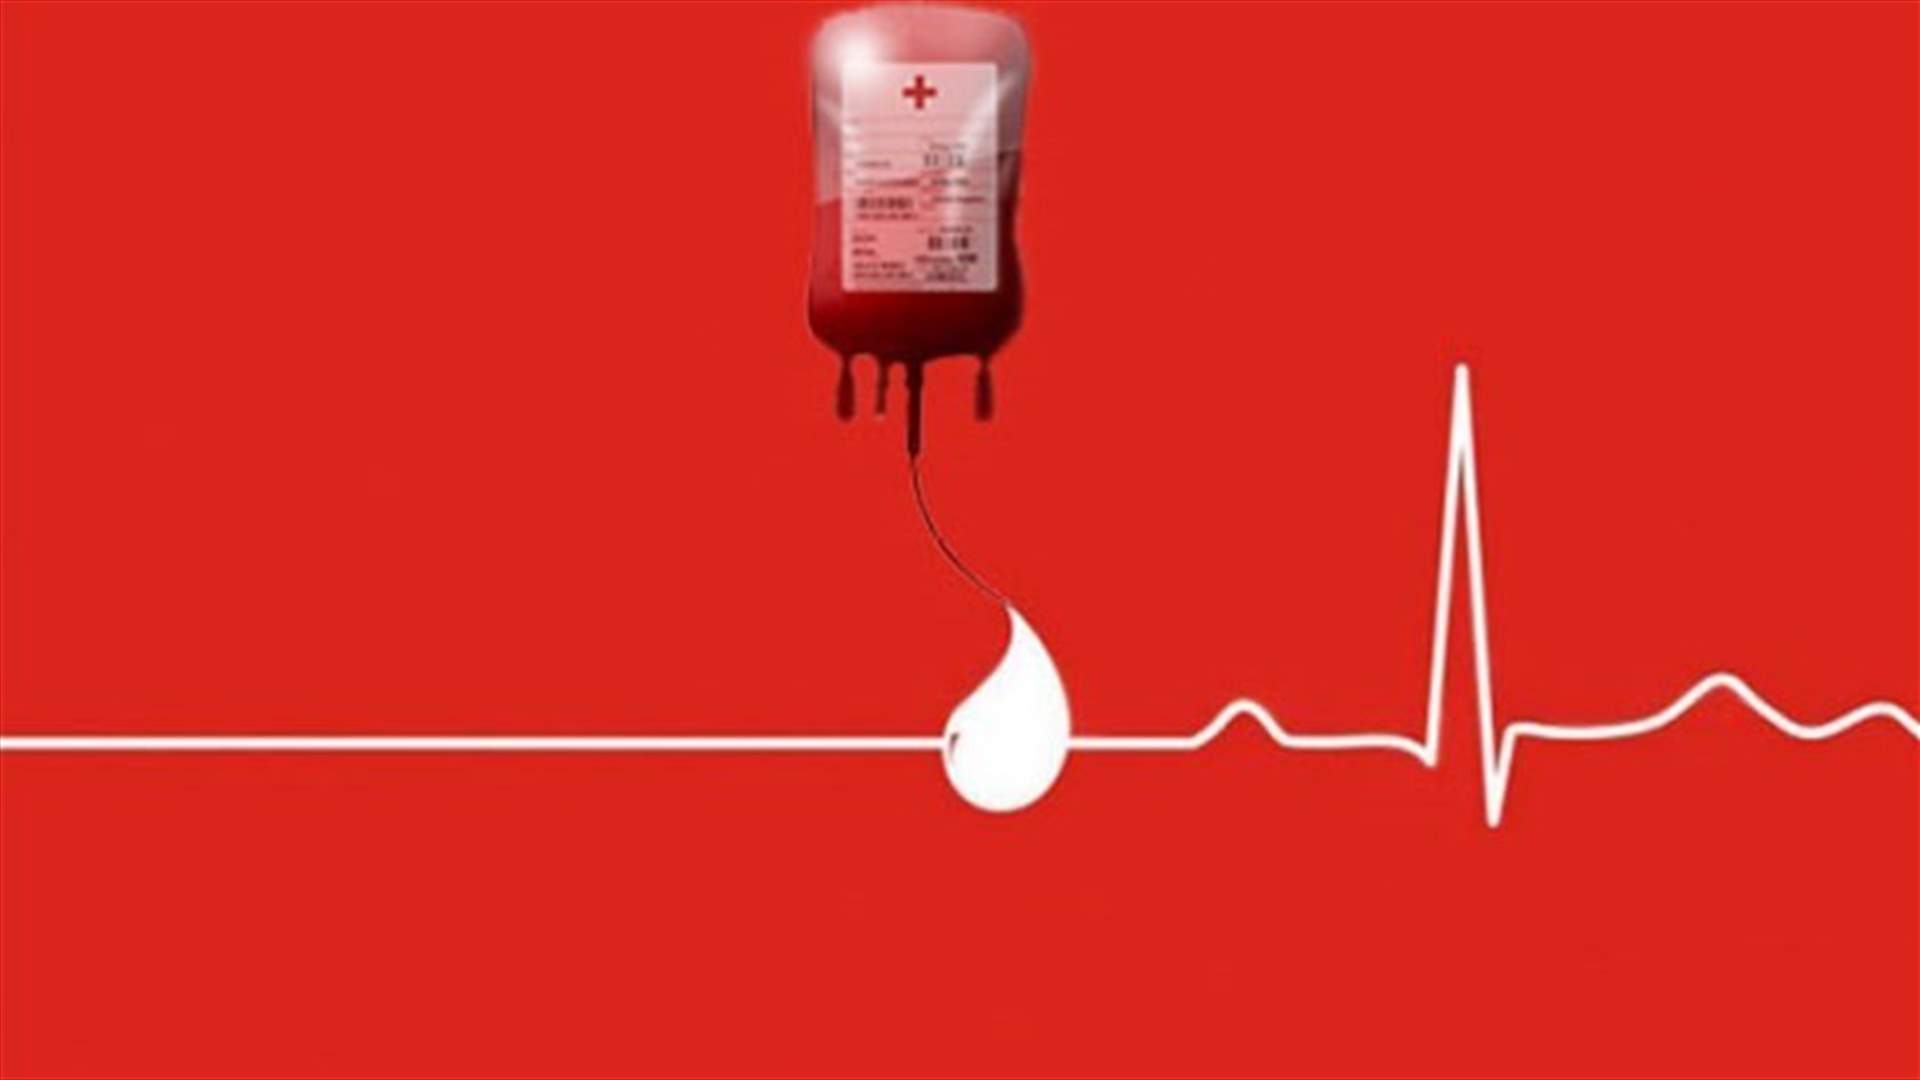 مريض في مستشفى سيدة لبنان في جونية بحاجة الى دم من فئة AB+ ... للتبرع الاتصال على 76649807